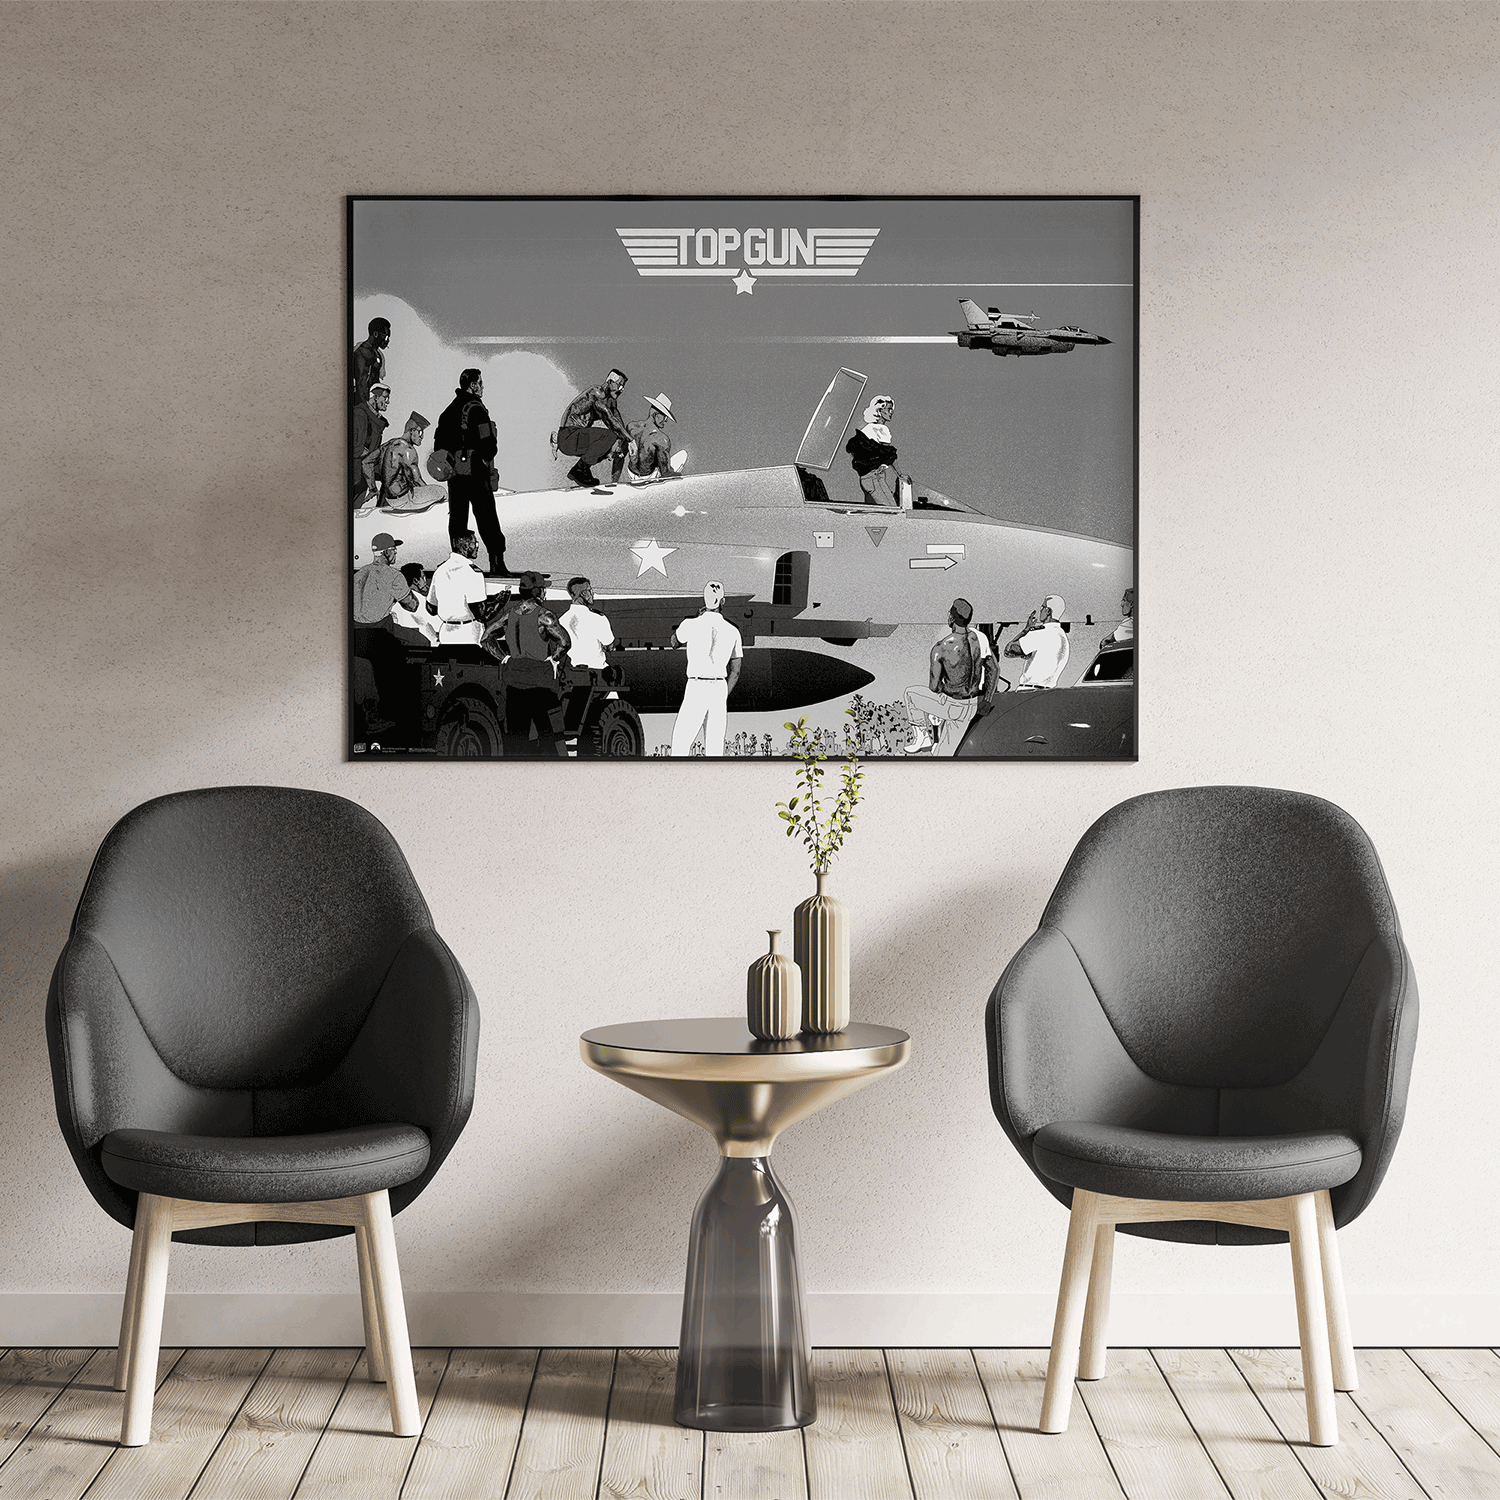 Plakat - maison d'edition d'affiche en serigraphie - affiche de cinema top gun variant (argent) réalisée par Paul lacolley - imprimée en edition limitée numérotée main